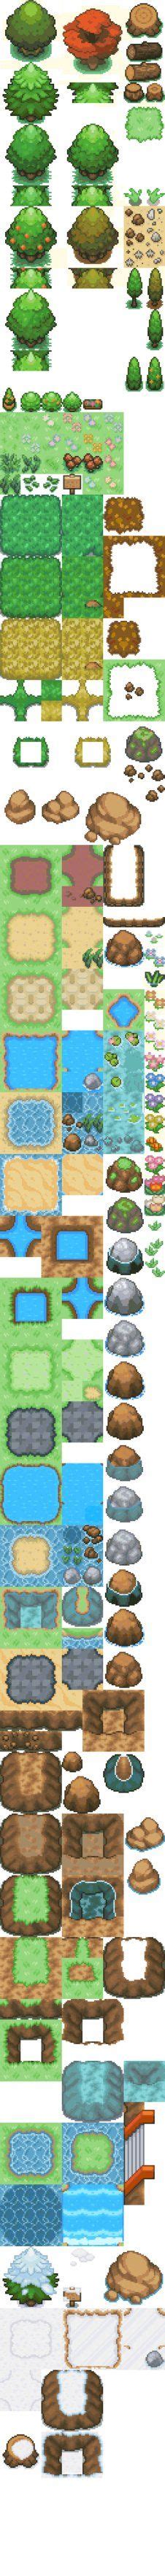 Pokemon Tilesets Ideas Pokemon Pixel Art Tutorial Pixel Art